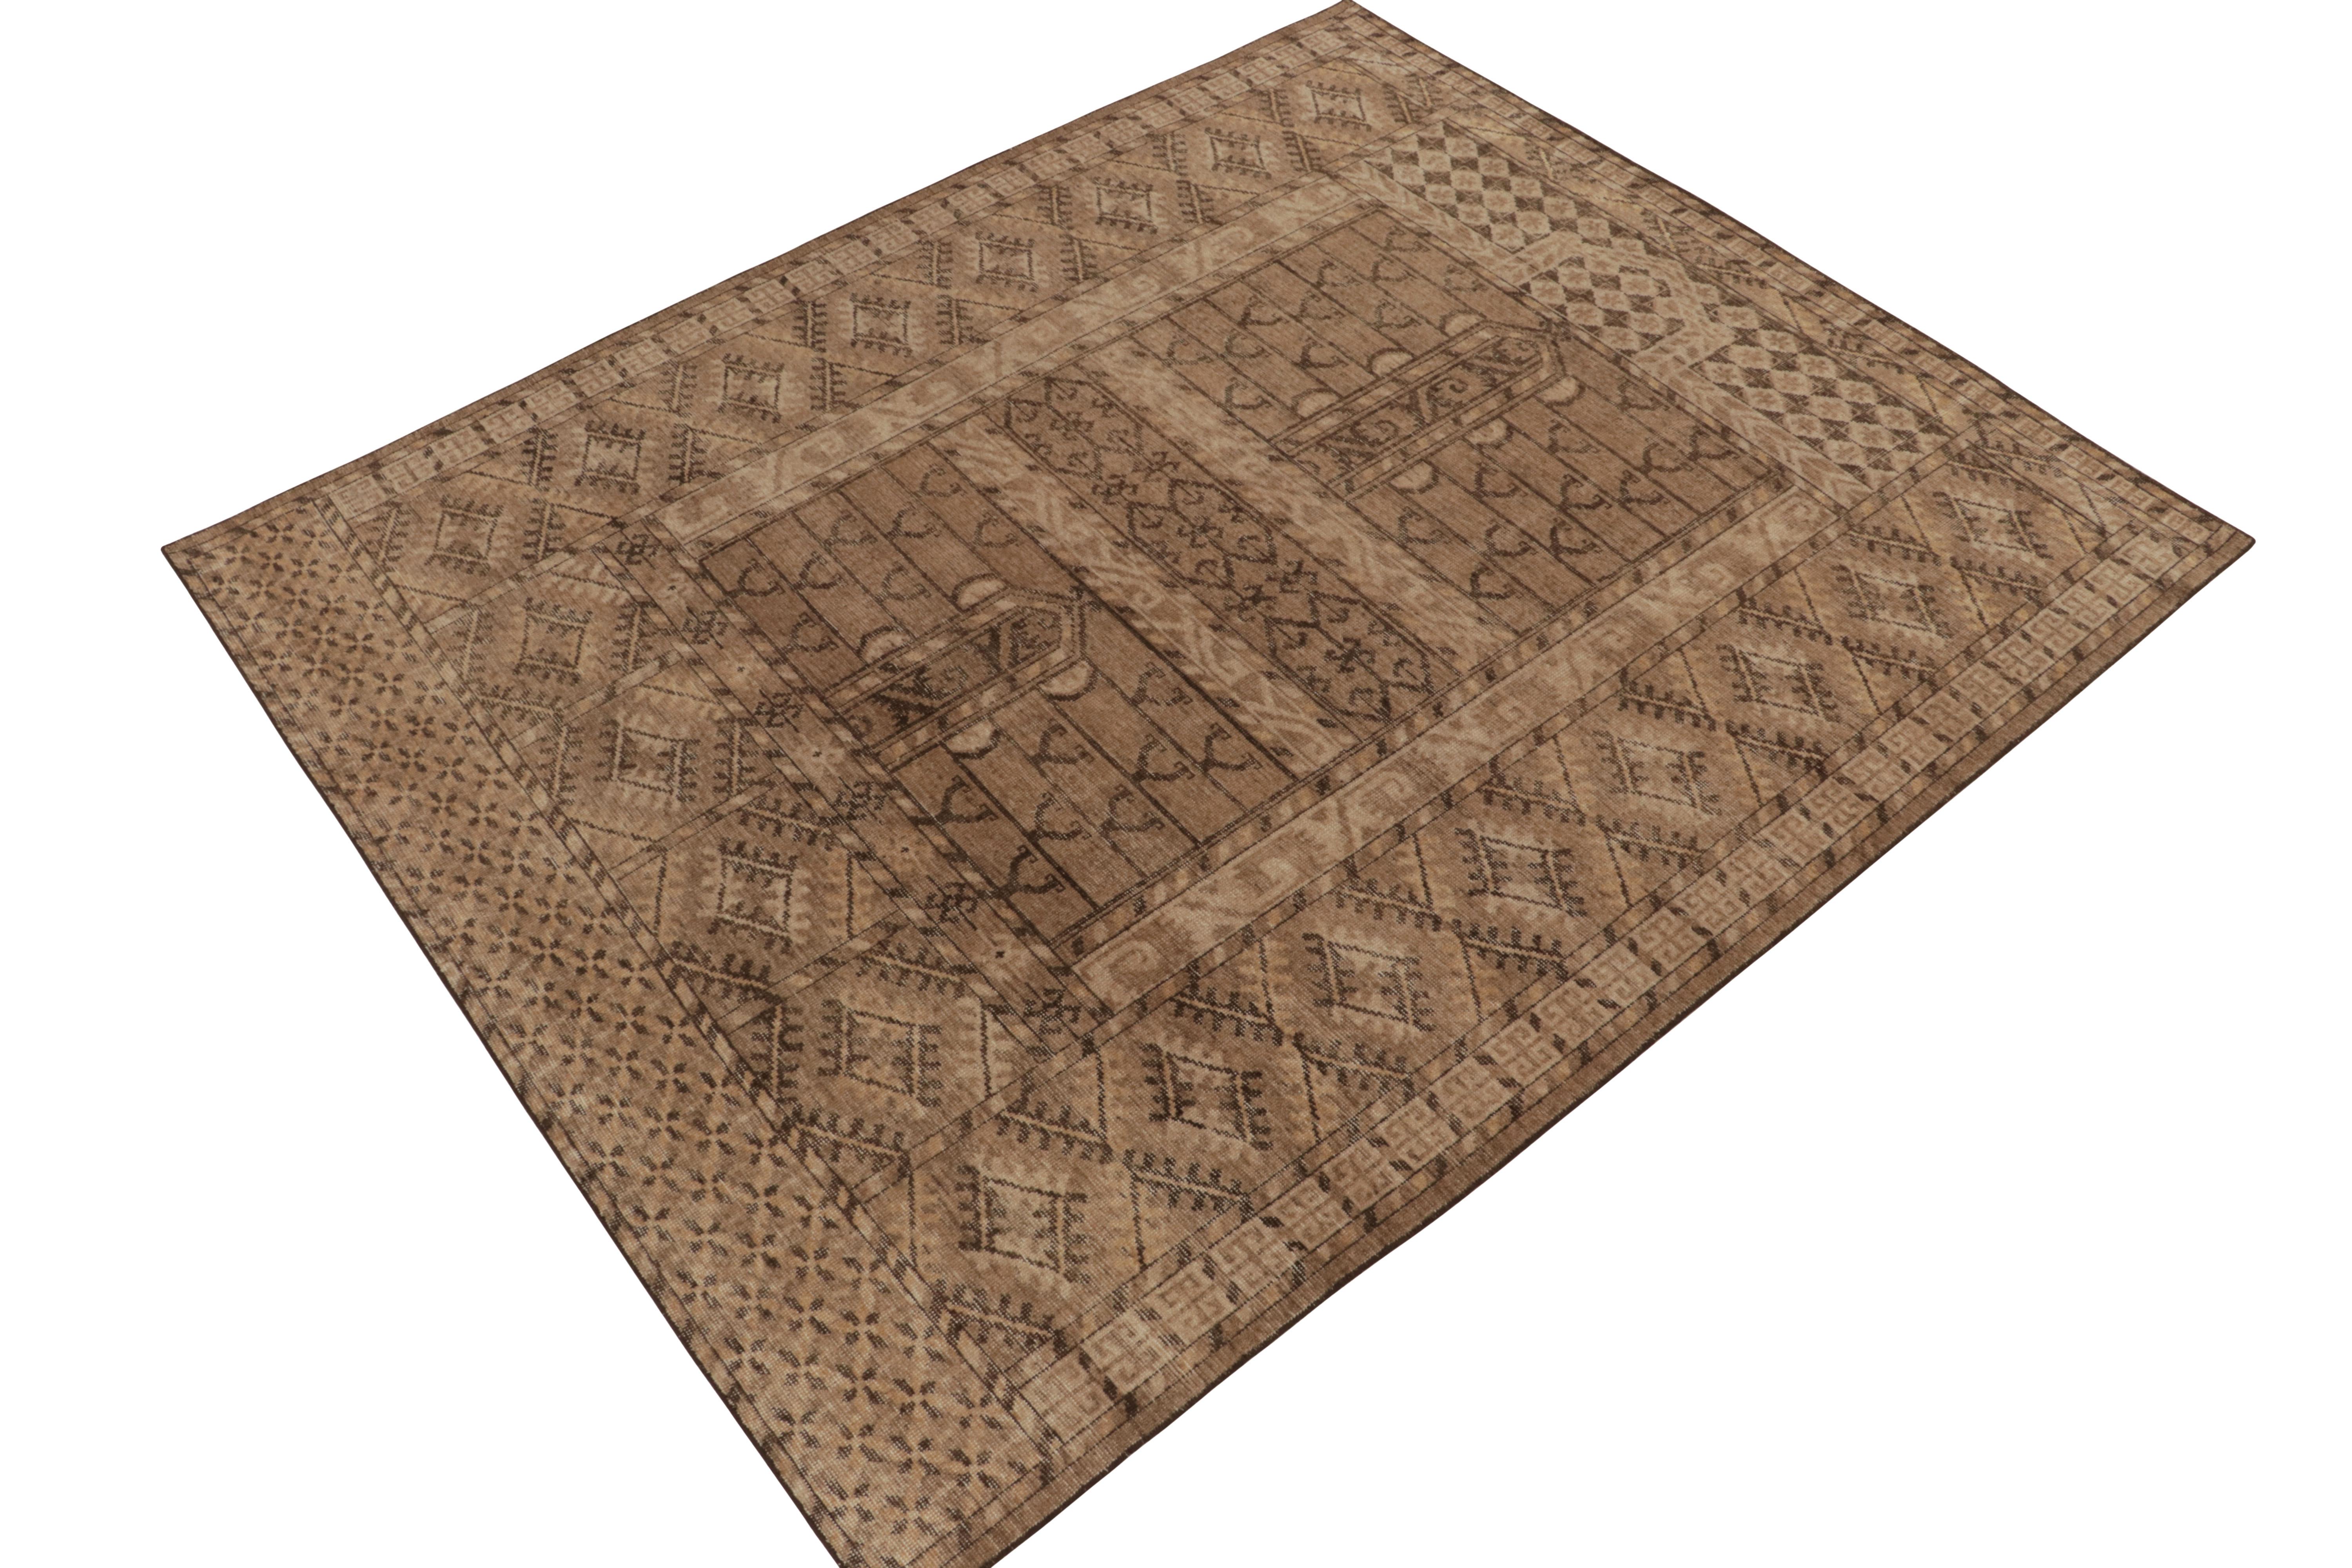 Un tapis en laine noué à la main 8x10 de la collection Homage de Rug & Kilim. 

Cette création reprend l'esthétique tribale d'une manière moderne avec des tons doux de beige et de brun qui complètent naturellement la géométrie tribale. Ce look